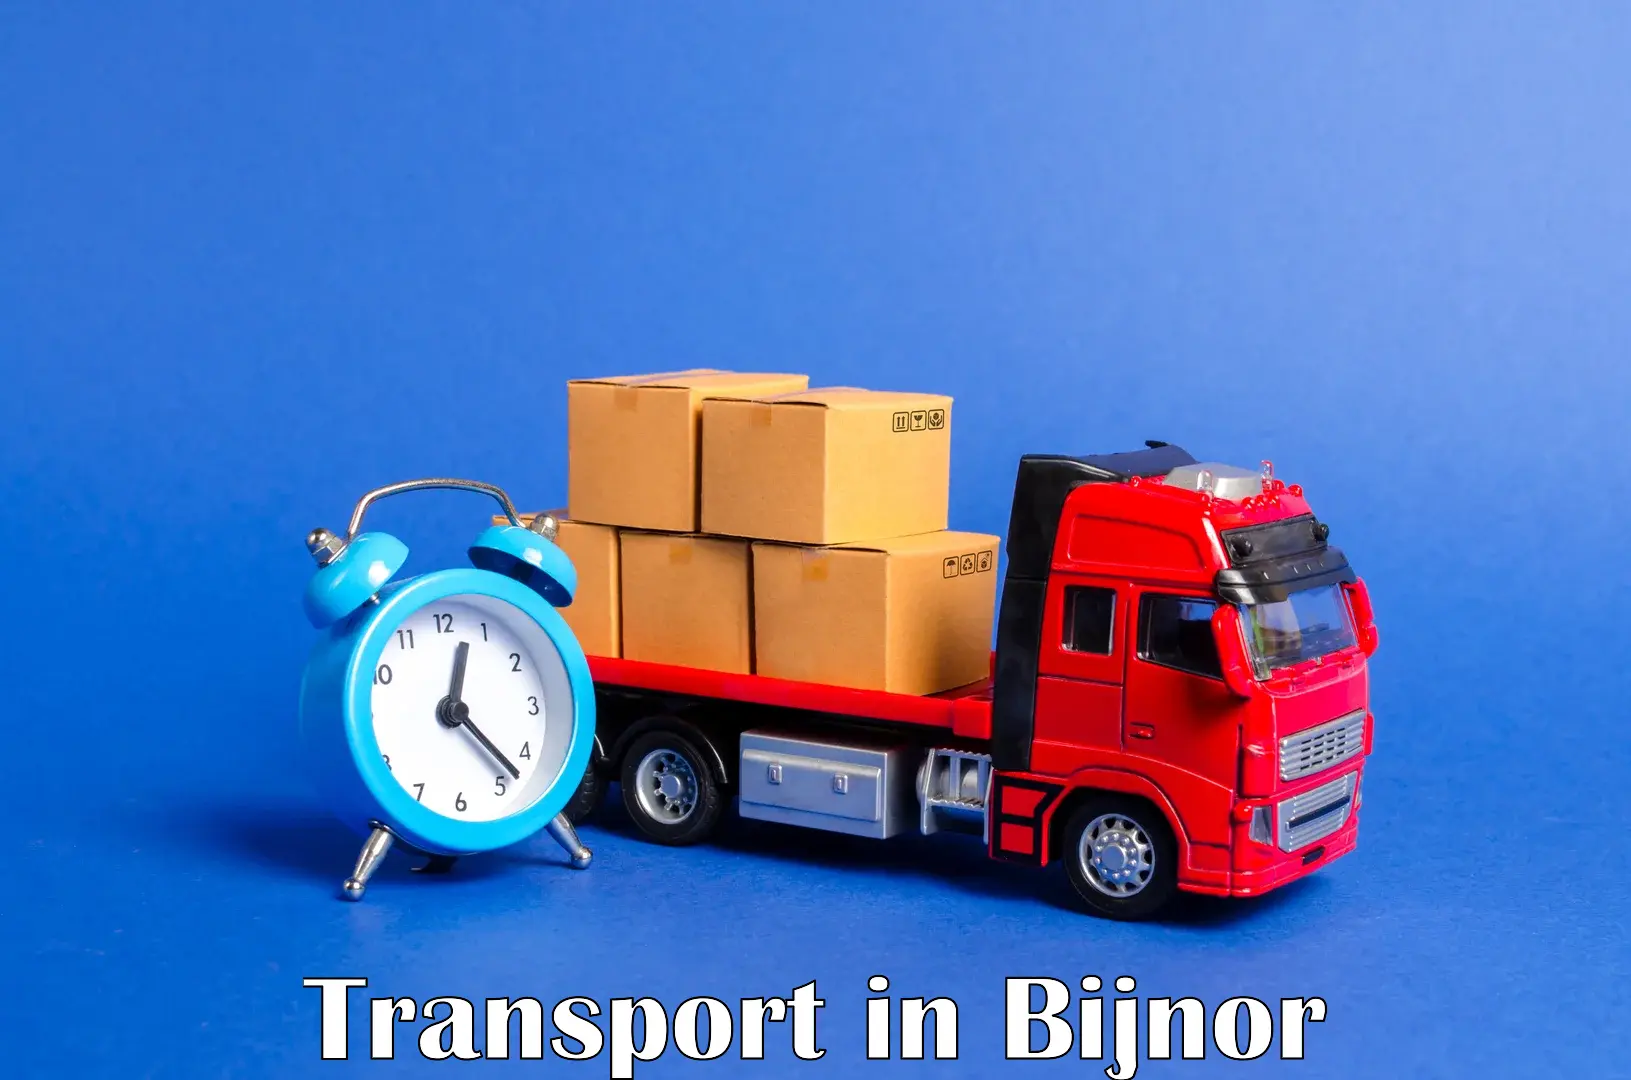 Nearest transport service in Bijnor